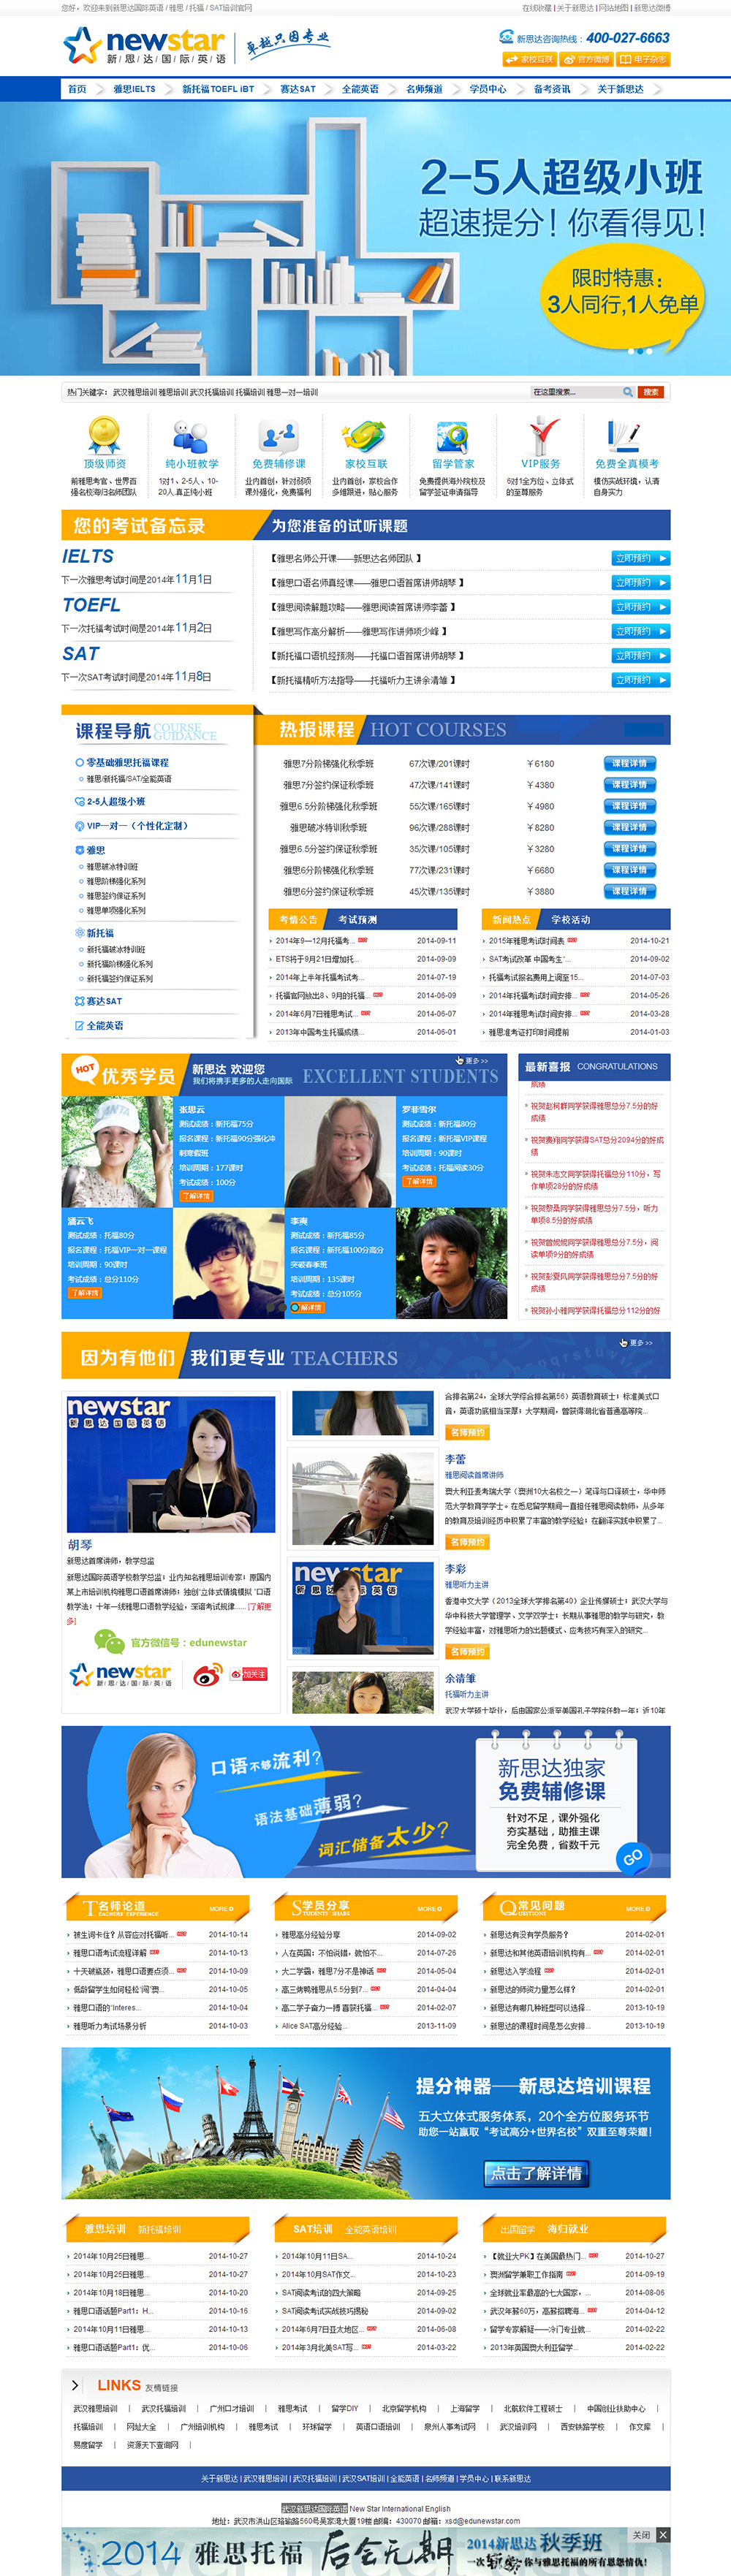 武汉新思达国际英语网站建设案例—武汉盛世互联